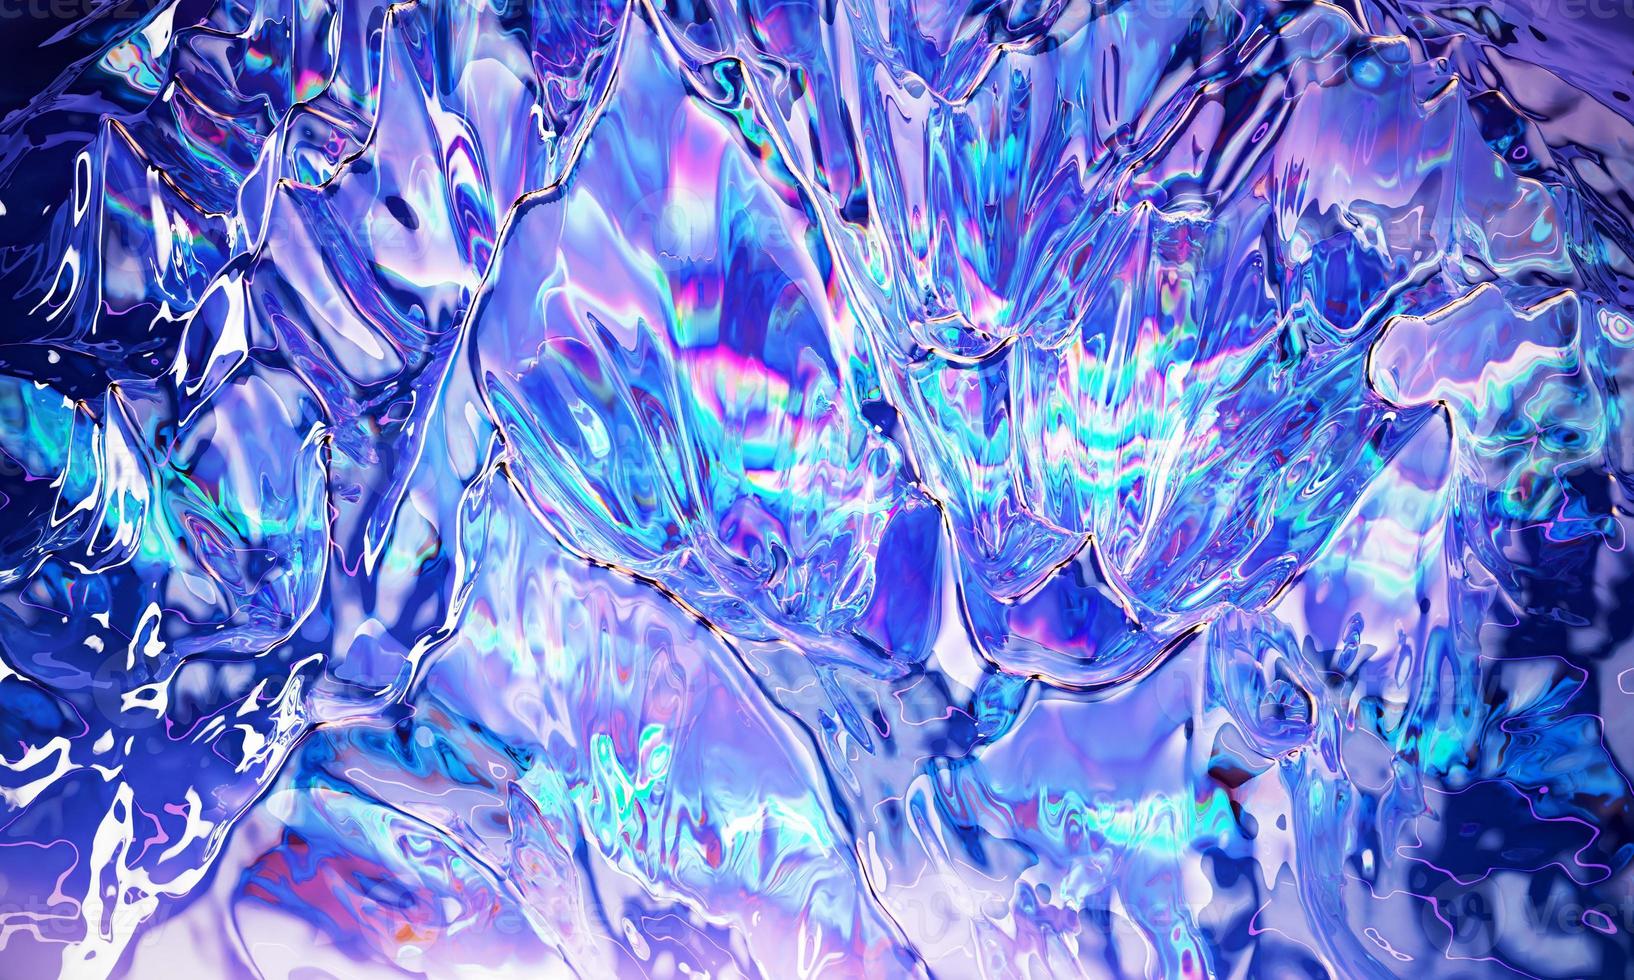 procesamiento 3d hermoso fondo mágico colorido moderno. dispersión de la superficie del vidrio. diseño de moda foto